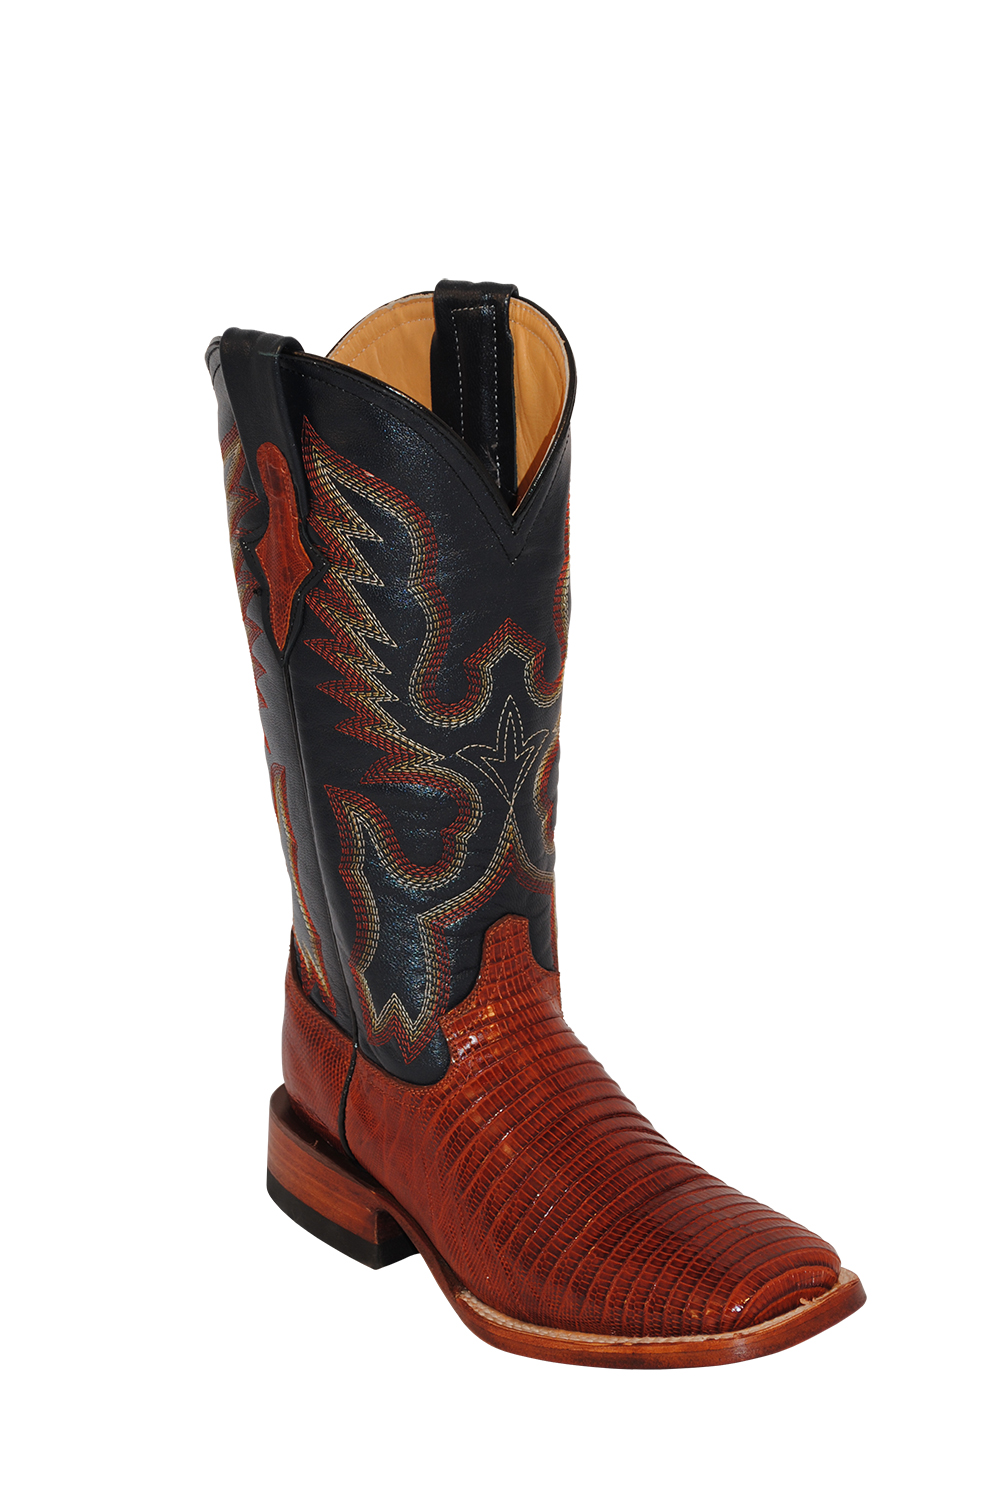 snakeskin boots 219